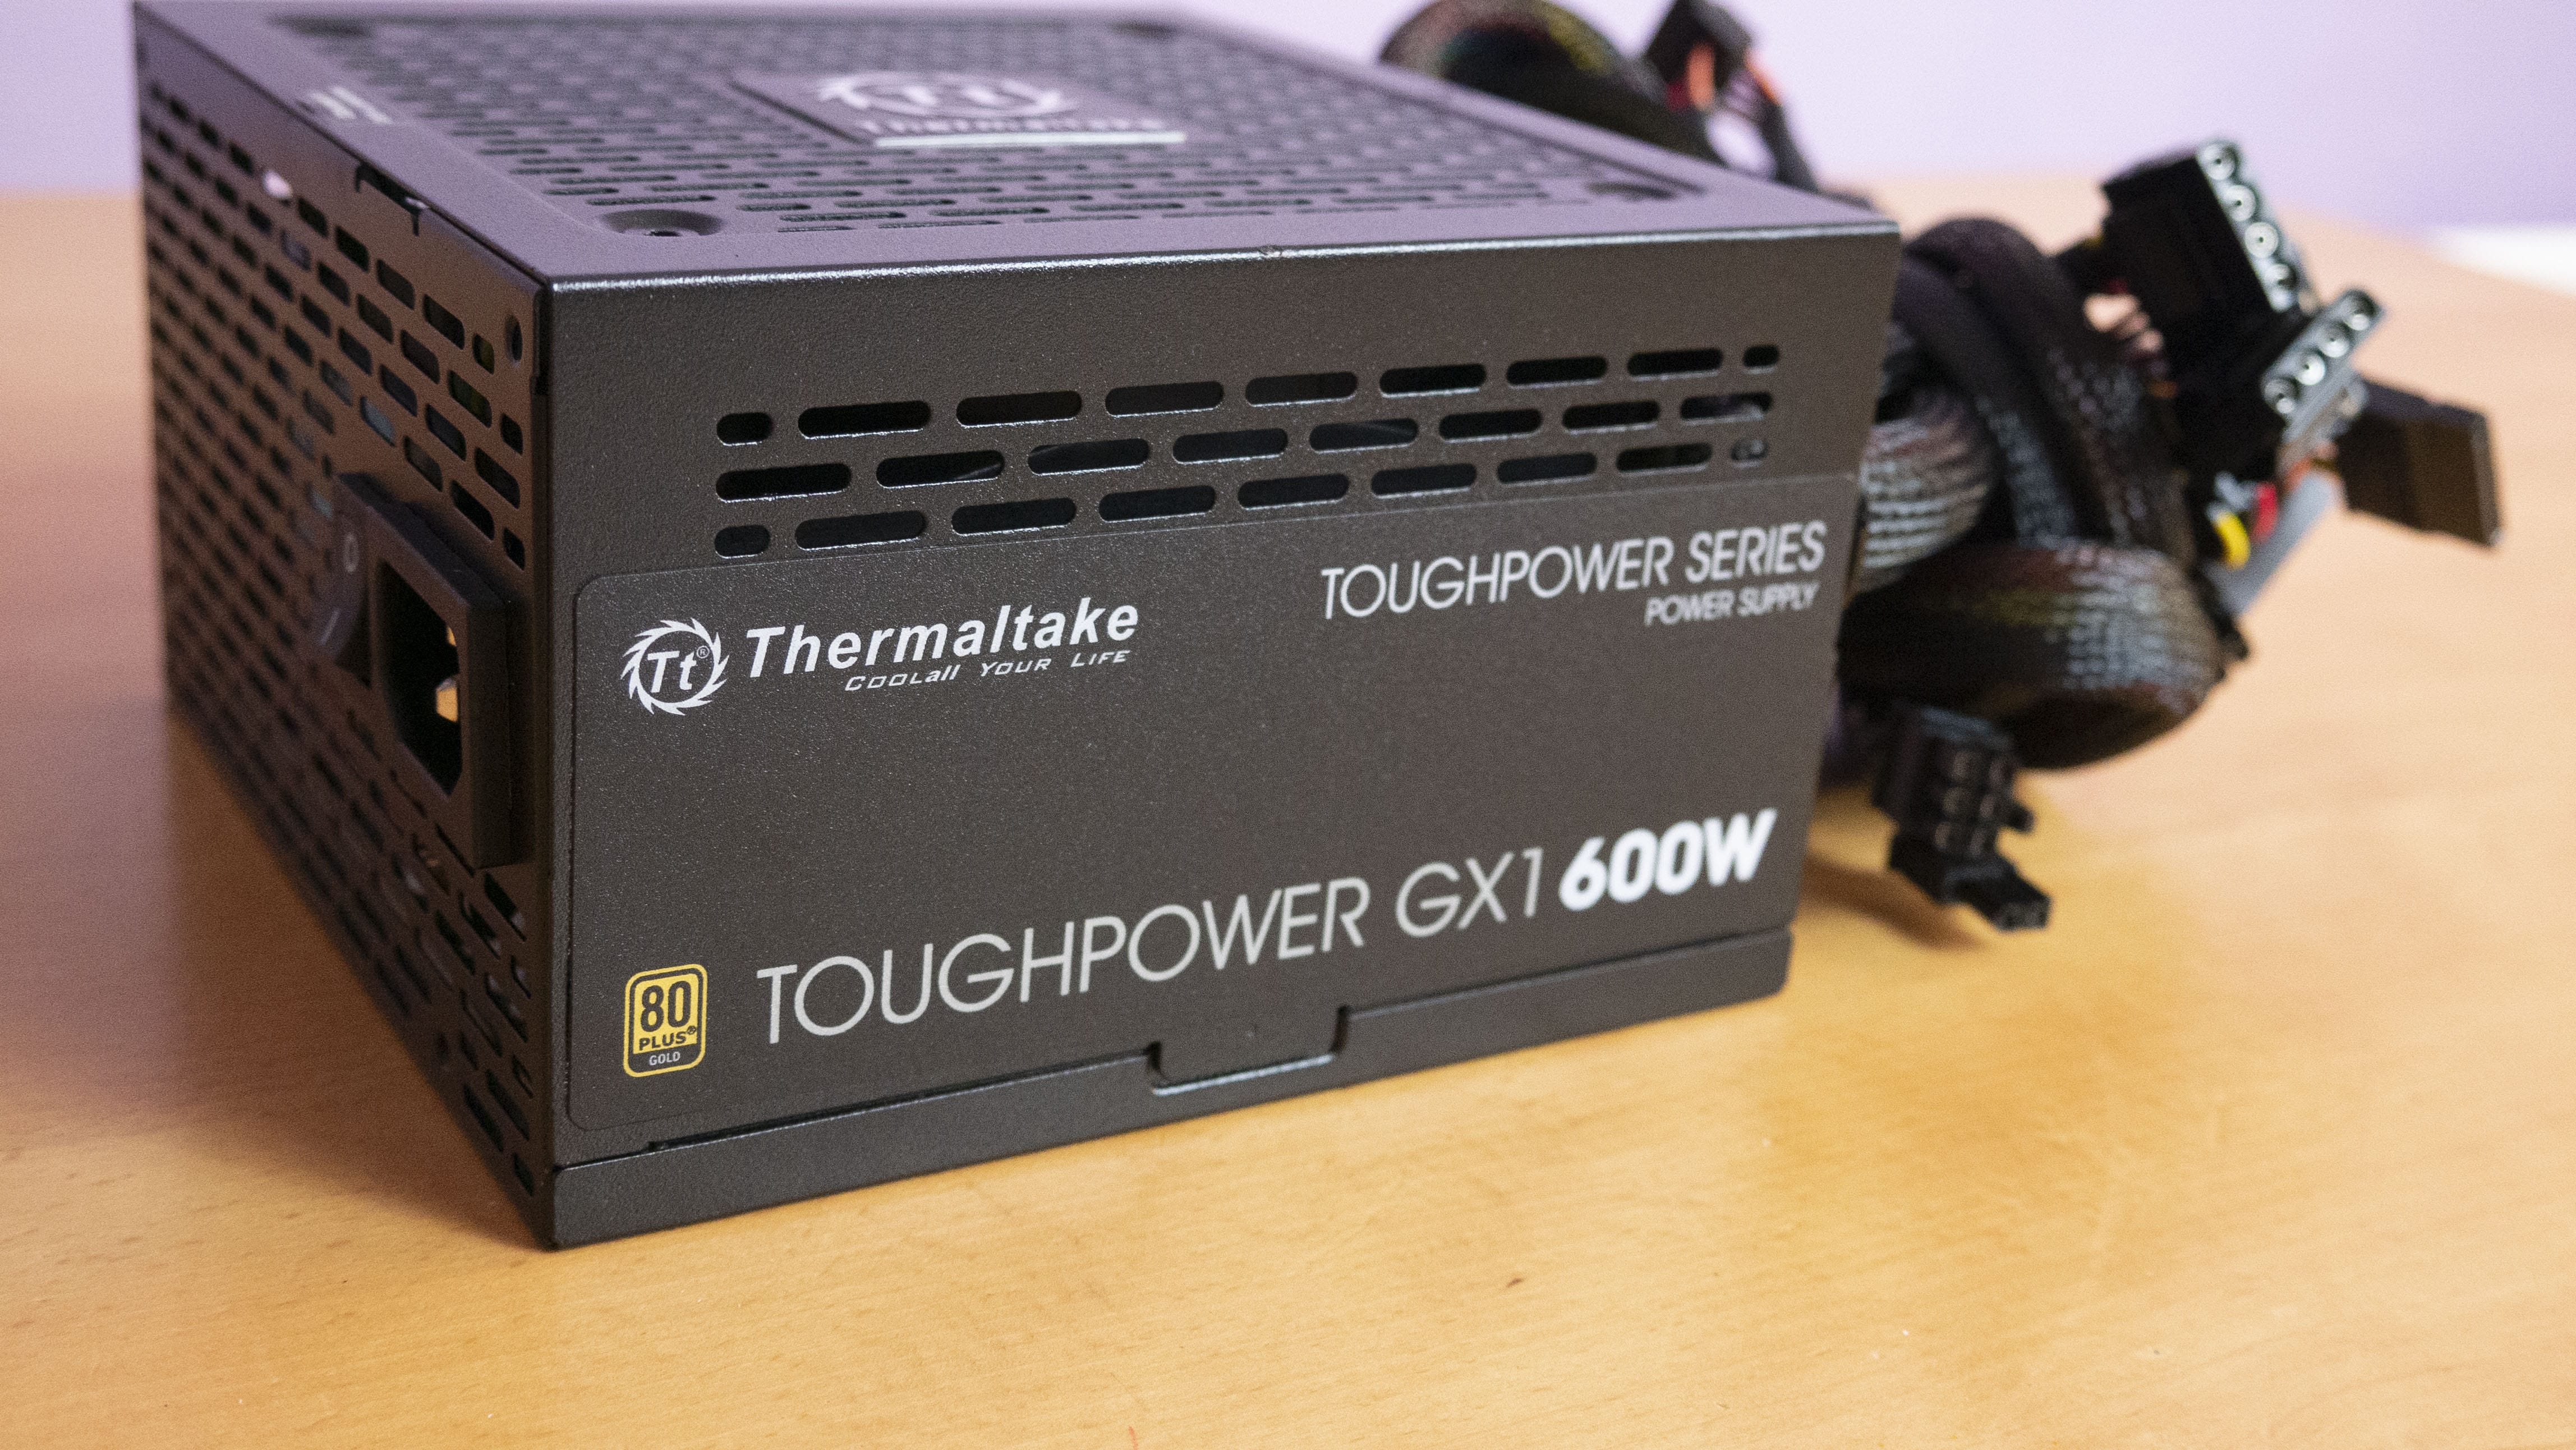 Toughpower gold. Thermaltake Toughpower gx1 RGB 700w. Thermaltake Toughpower gx1 700w. Thermaltake Toughpower gx1 600w. Thermaltake 600w Toughpower AP.